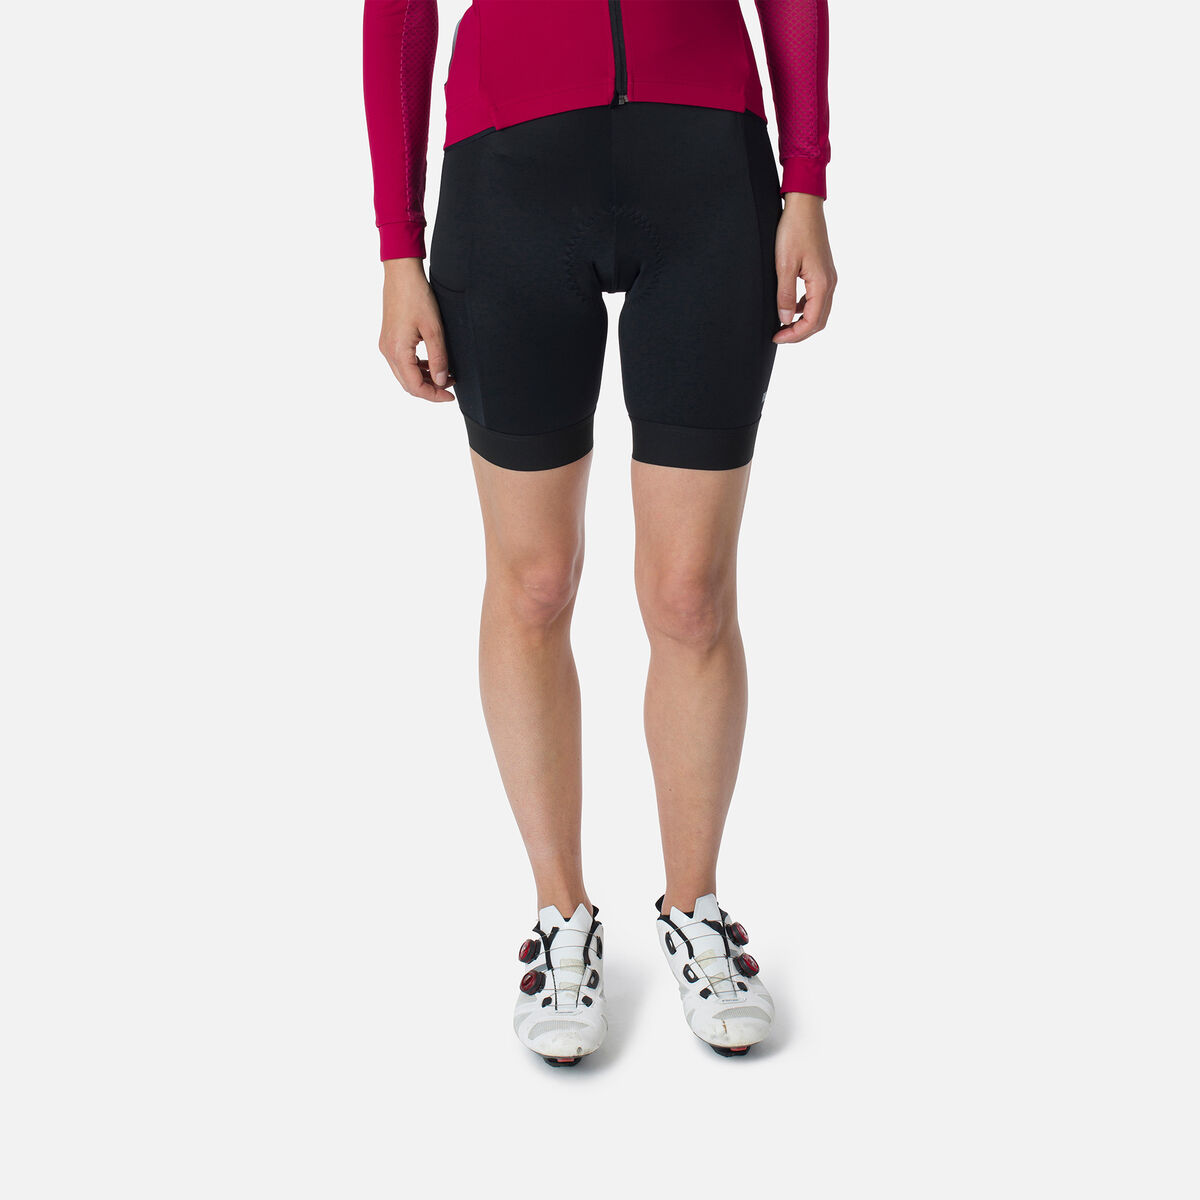 Women's Cycling Bib Shorts